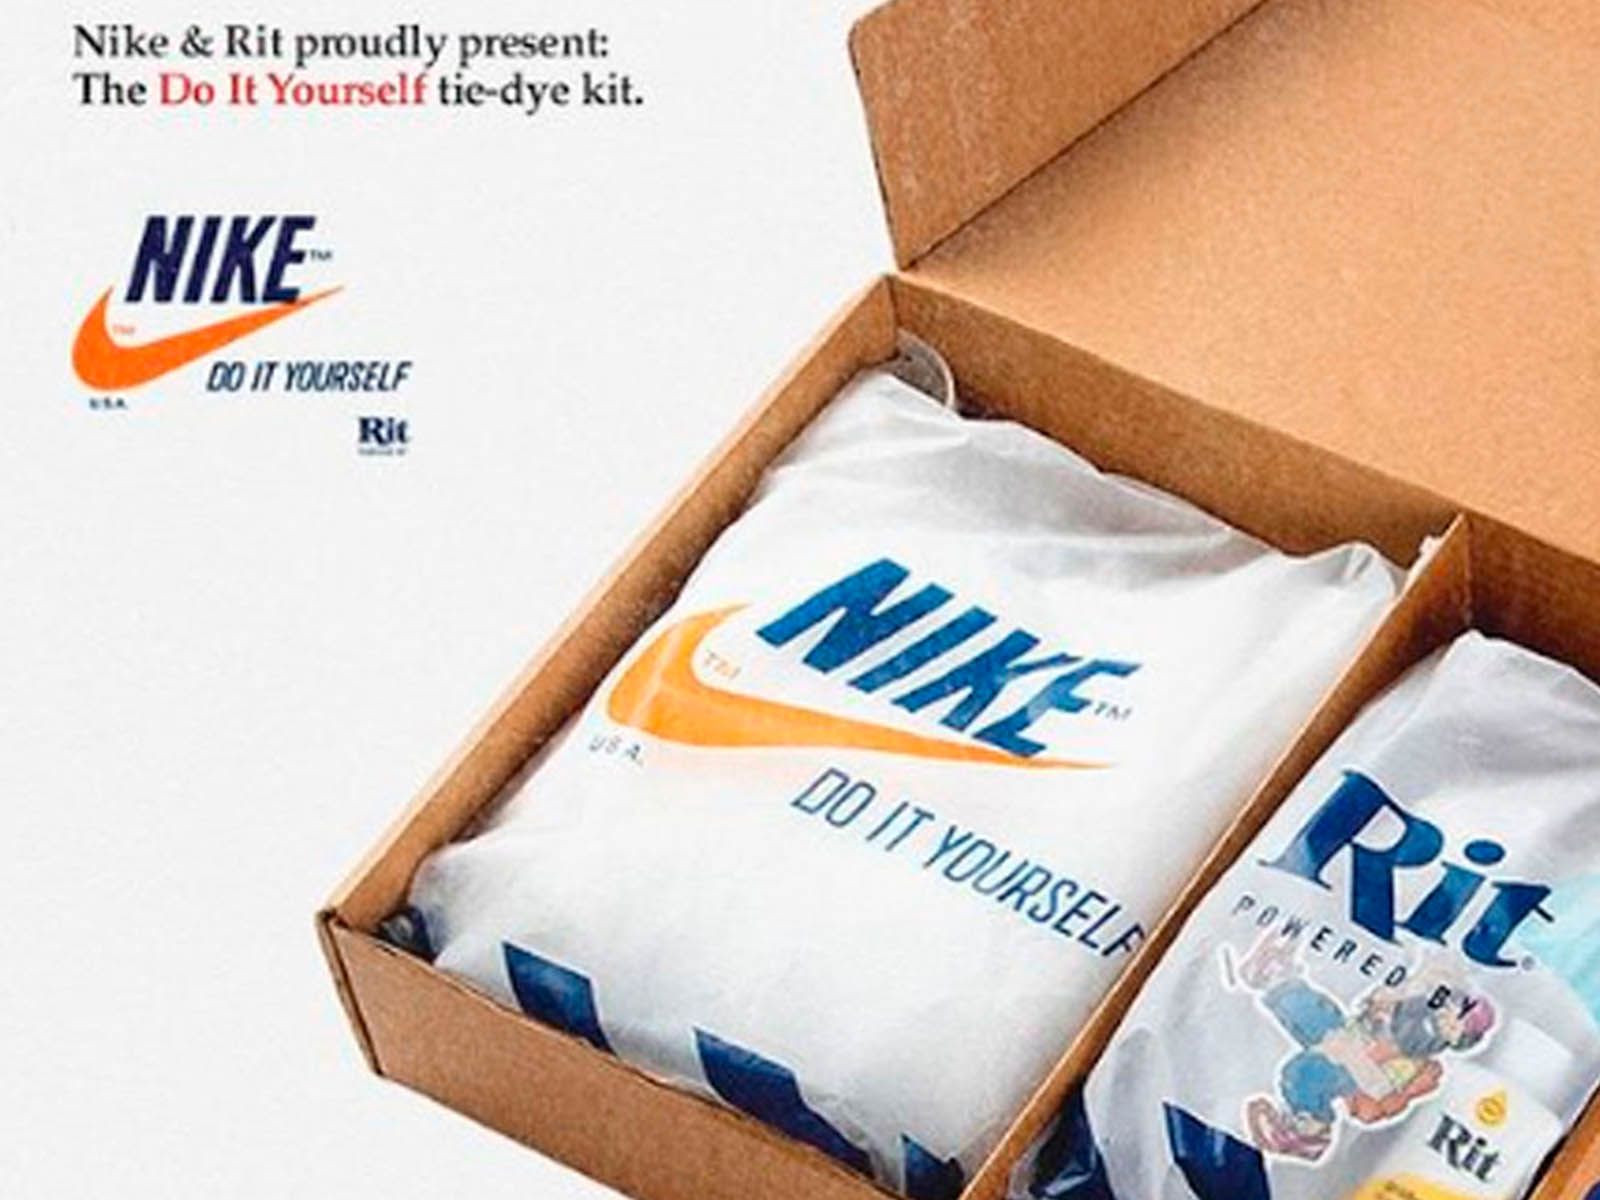 Nike Rit Dye se unen para lanzar un kit de -